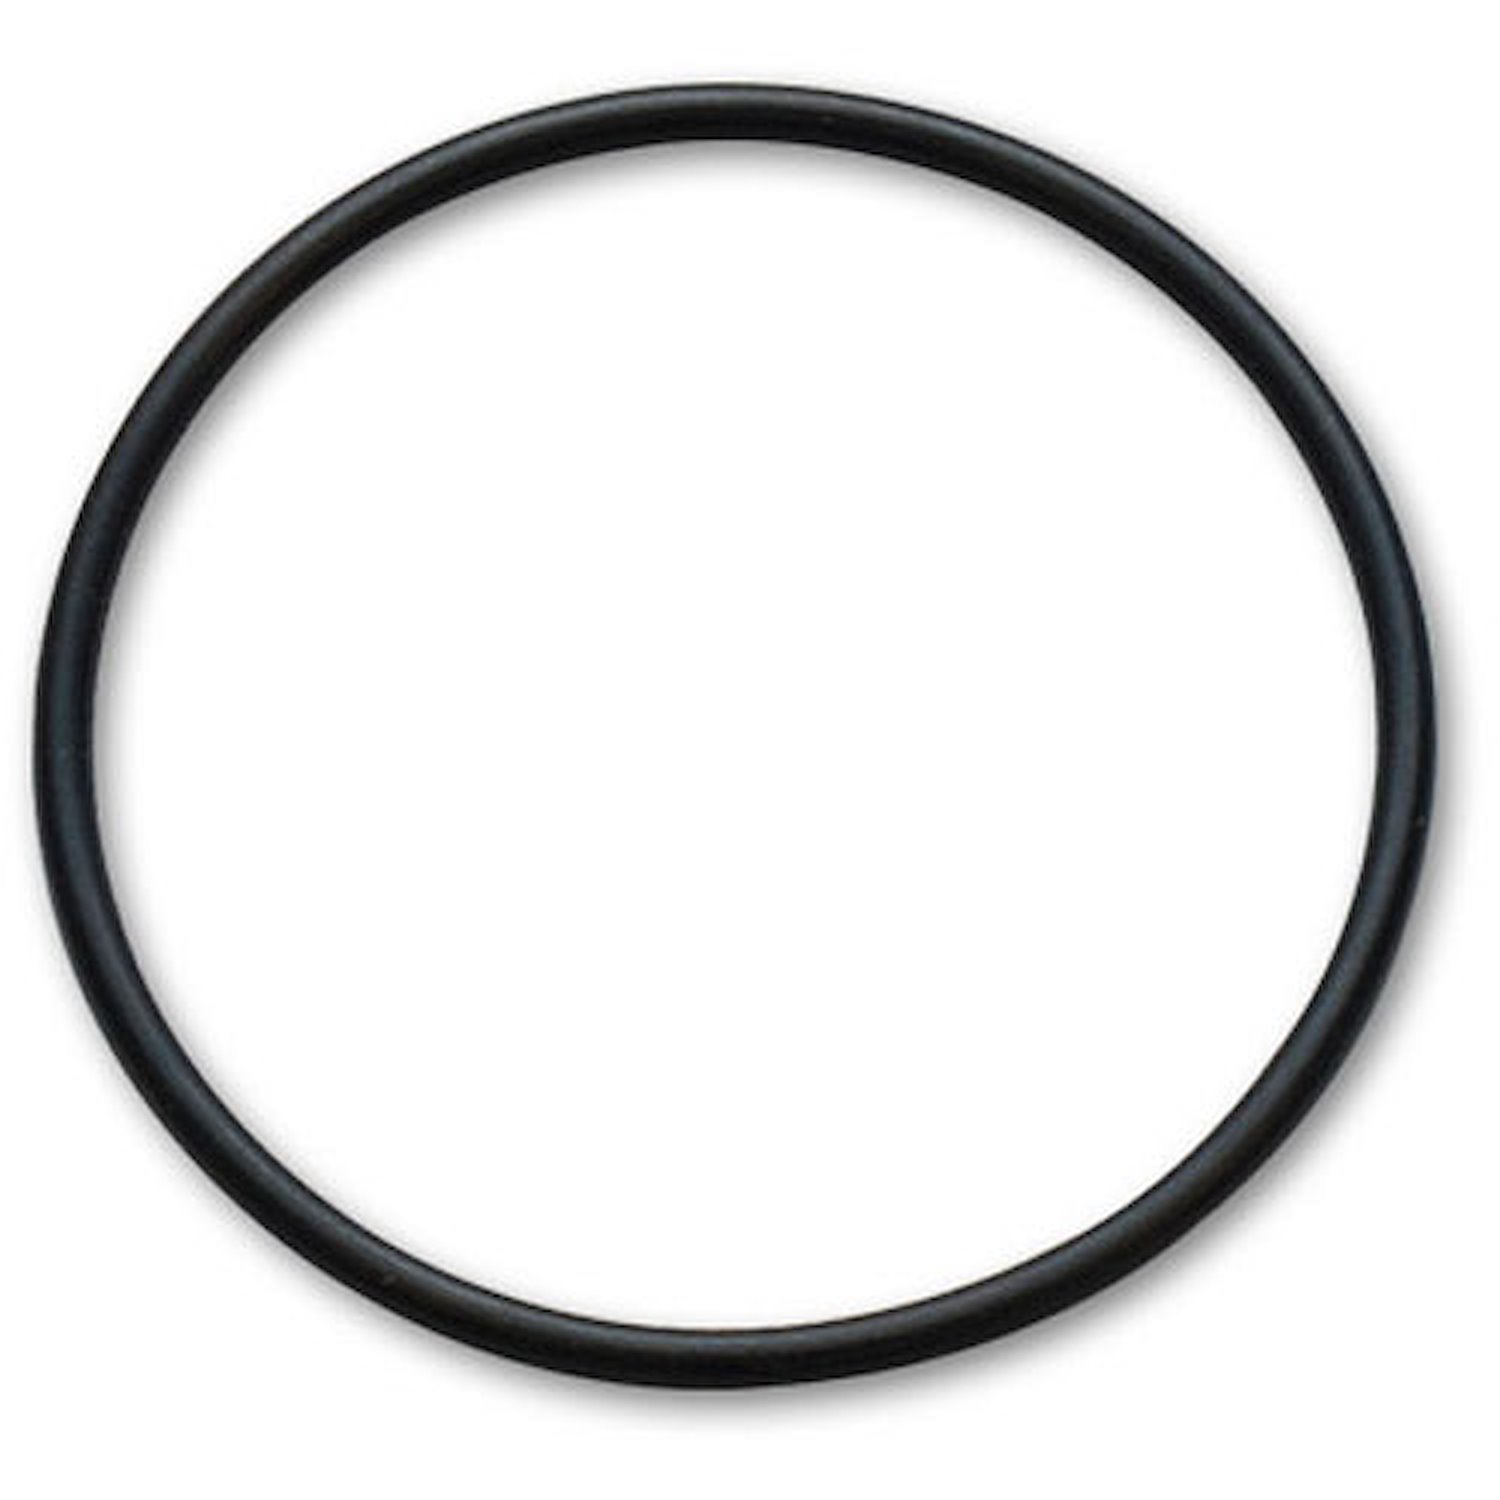 Mitrile 70 Durometer O-Ring (Size - 029) BUNA